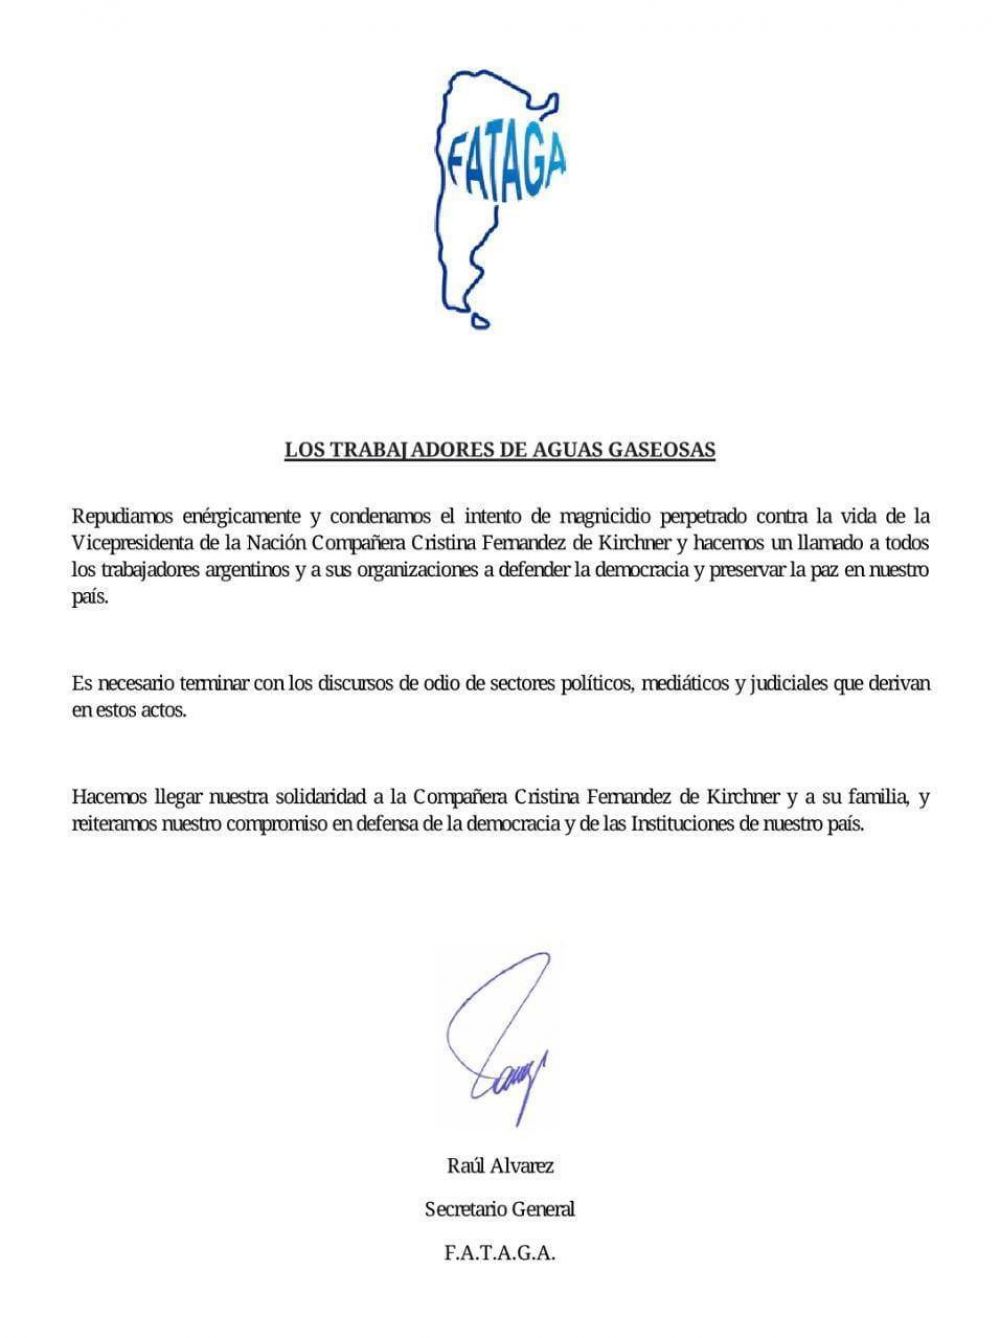 FATAGA repudió el intento de magnicidio contra Cristina Kirchner